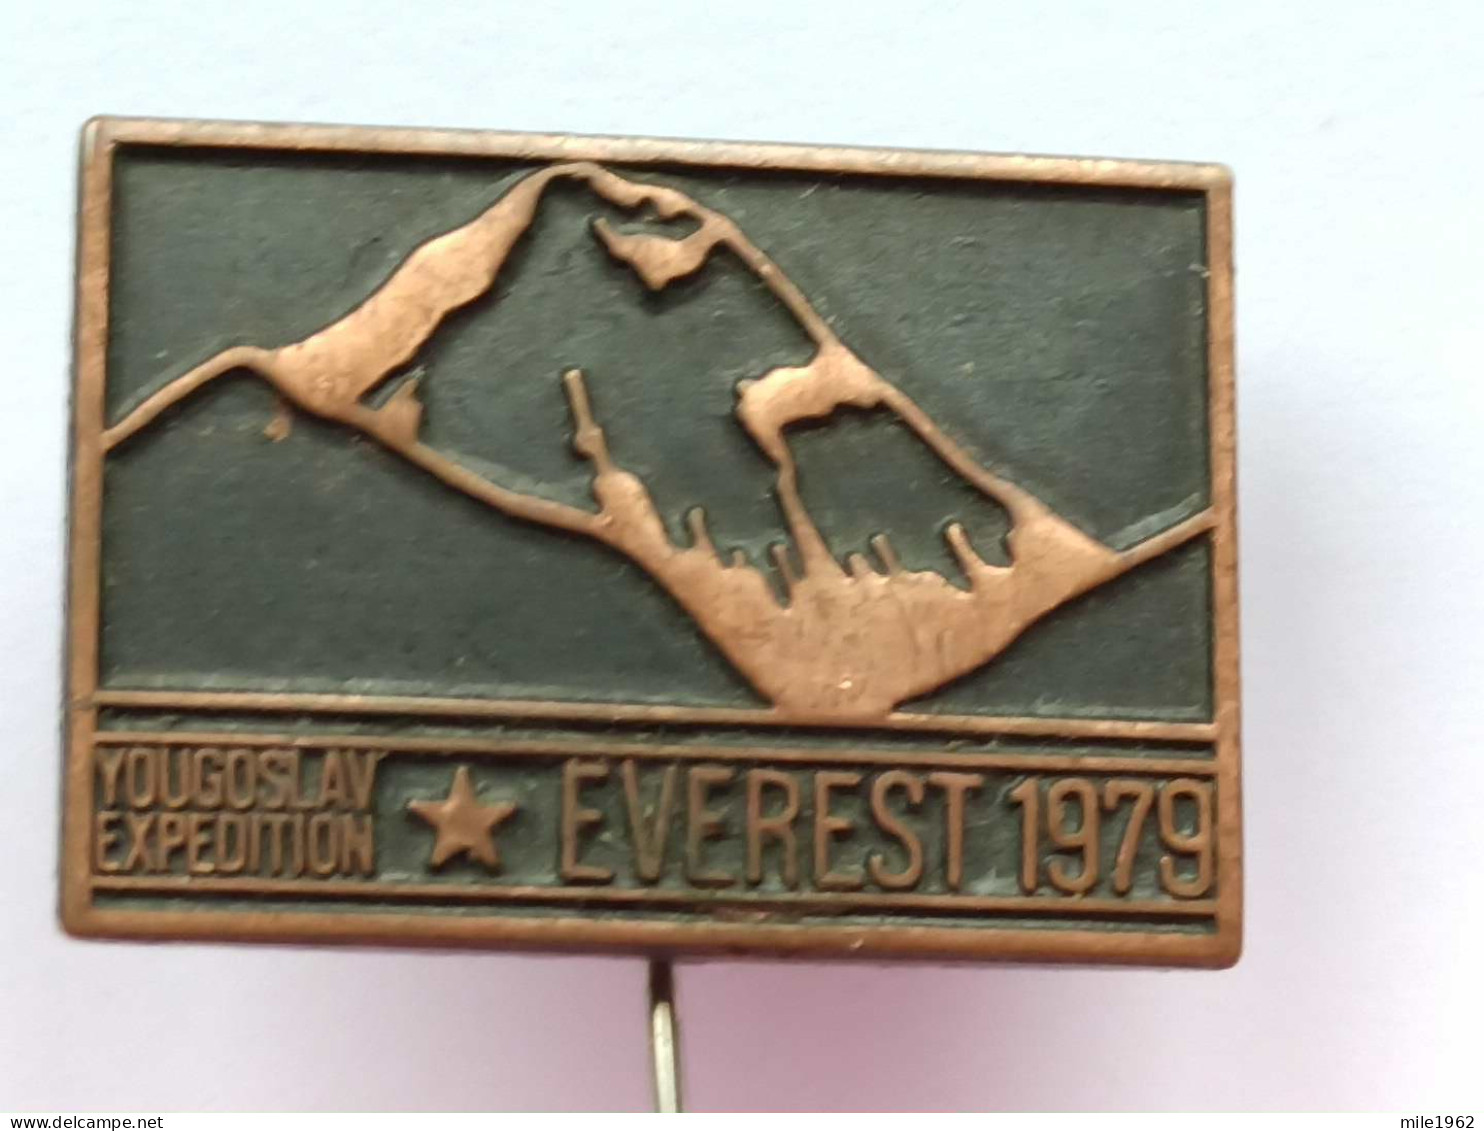 BADGE Z-74-2 - ALPINISM, Mountain, Mountaineering, EVEREST 1979, YUGOSLAV EXPEDITION - Alpinismo, Escalada